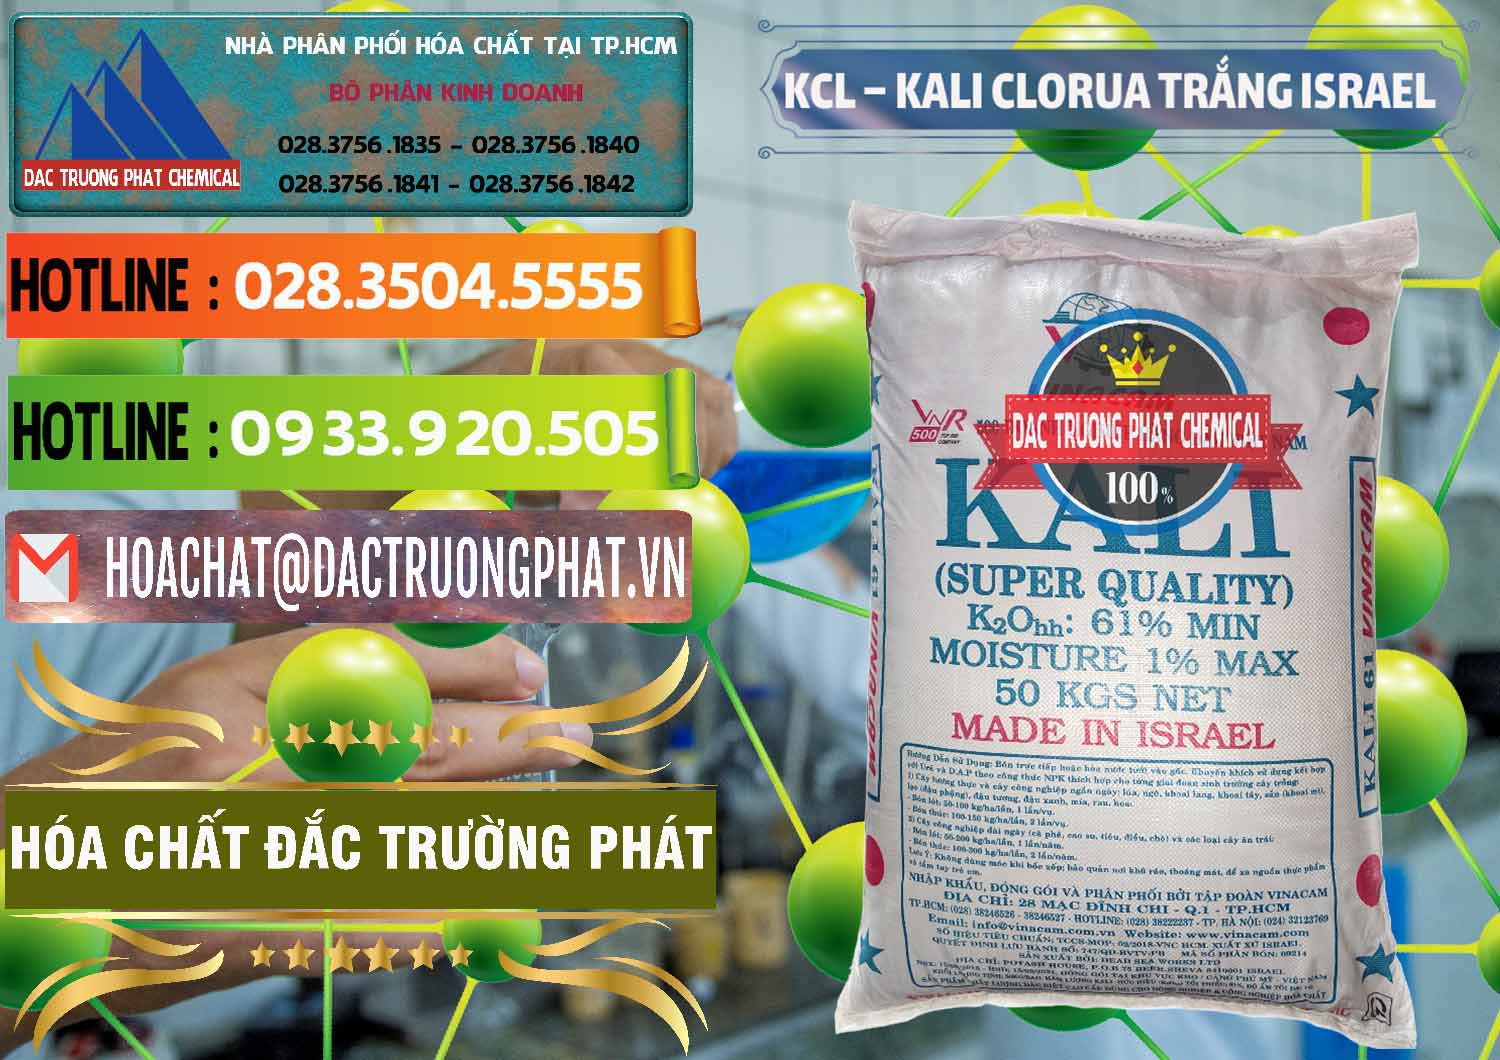 Nơi chuyên bán ( cung cấp ) KCL – Kali Clorua Trắng Israel - 0087 - Chuyên phân phối - cung cấp hóa chất tại TP.HCM - cungcaphoachat.com.vn